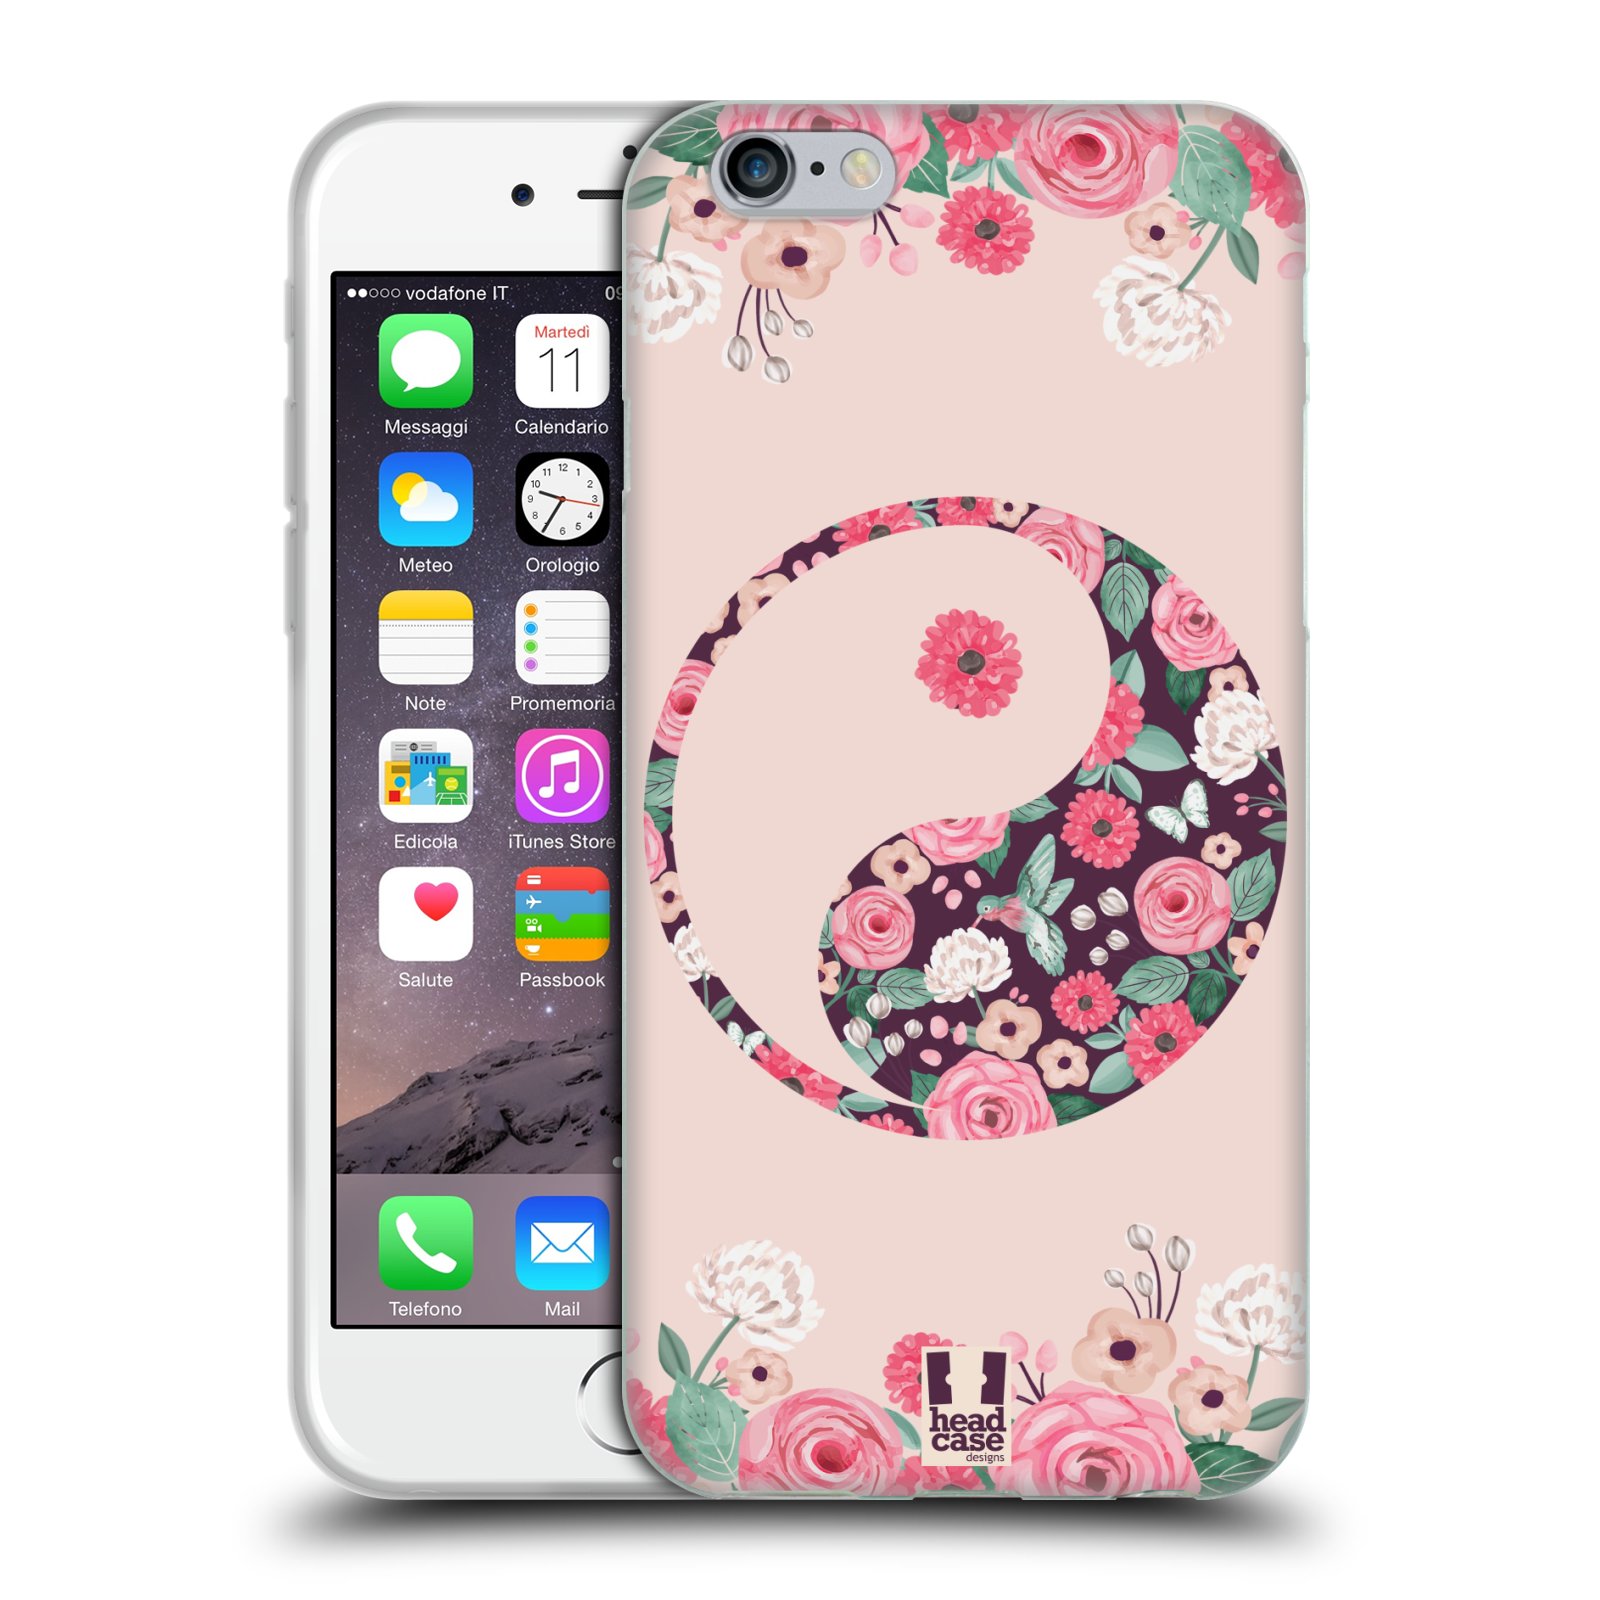 Silikonové pouzdro na mobil Apple iPhone 6 a 6S HEAD CASE Yin a Yang Floral (Silikonový kryt či obal na mobilní telefon Apple iPhone 6 a 6S)